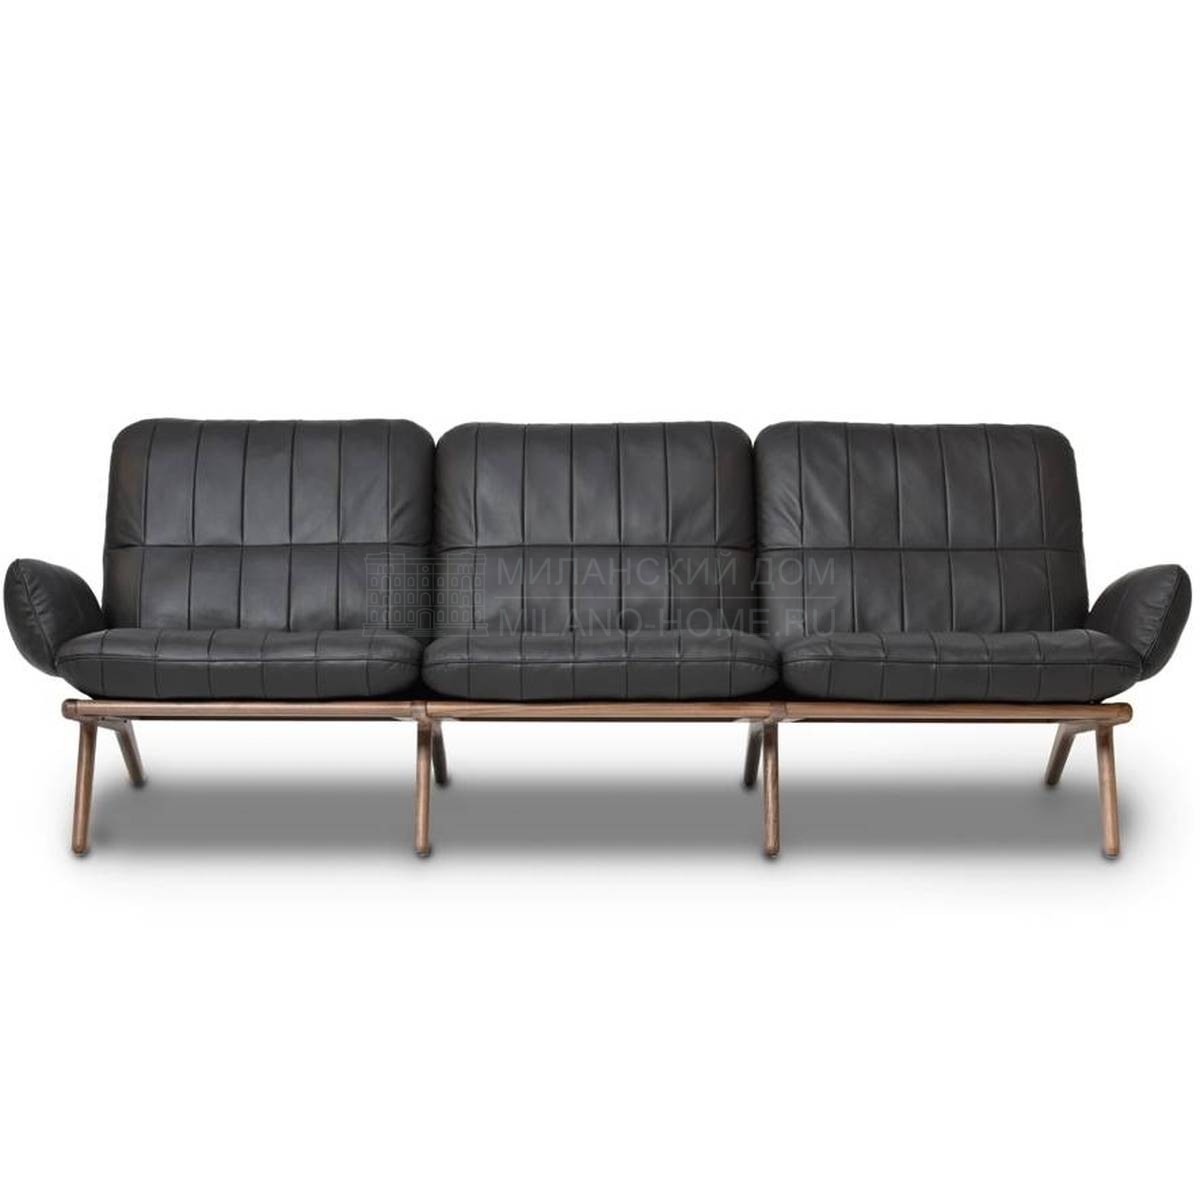 Прямой диван DS-531 sofa из Швейцарии фабрики DE SEDE